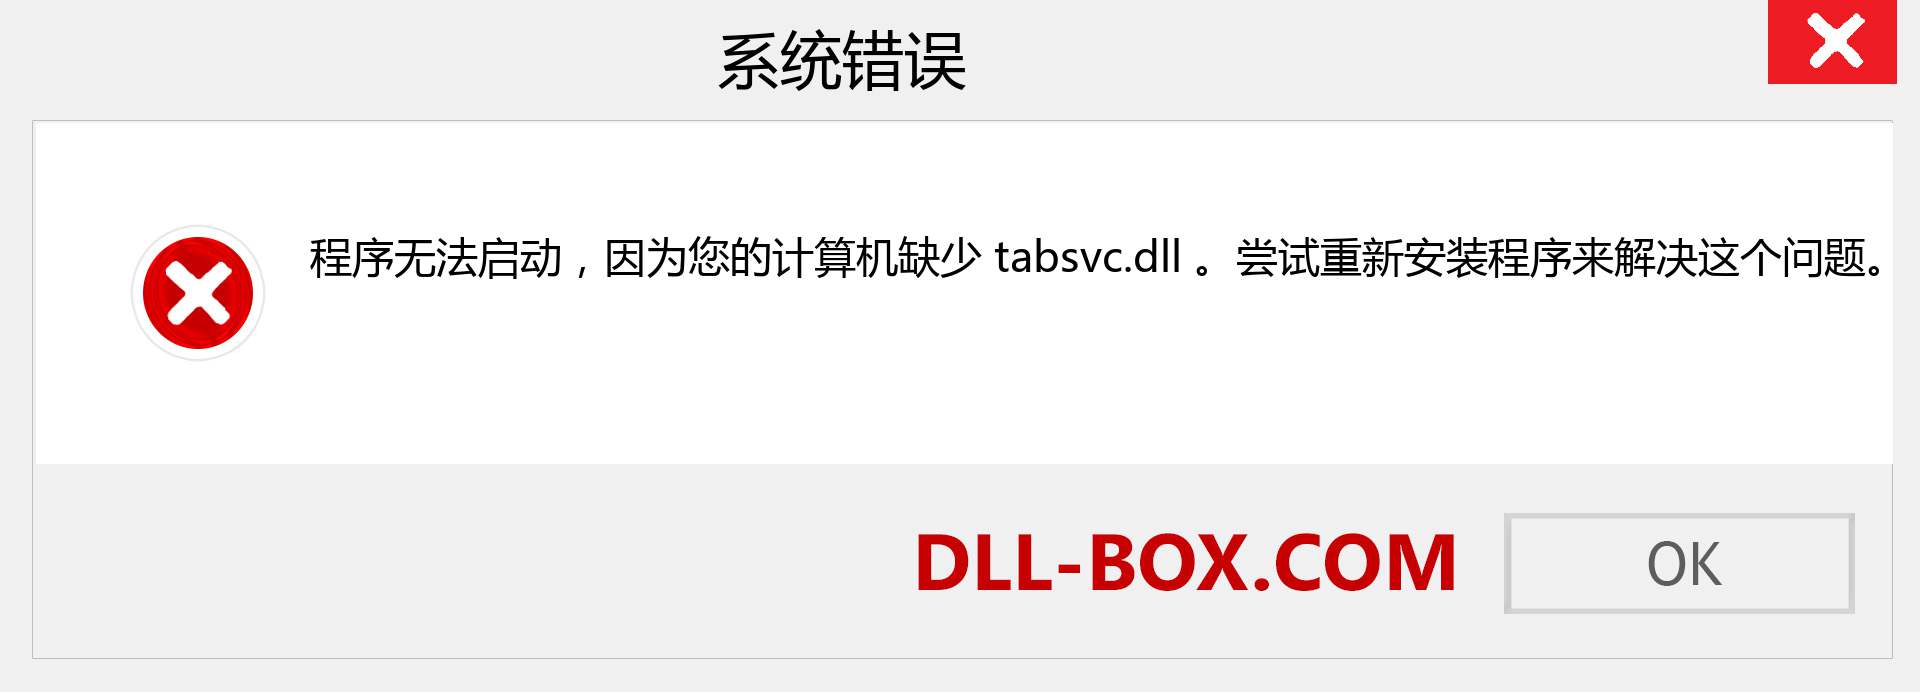 tabsvc.dll 文件丢失？。 适用于 Windows 7、8、10 的下载 - 修复 Windows、照片、图像上的 tabsvc dll 丢失错误